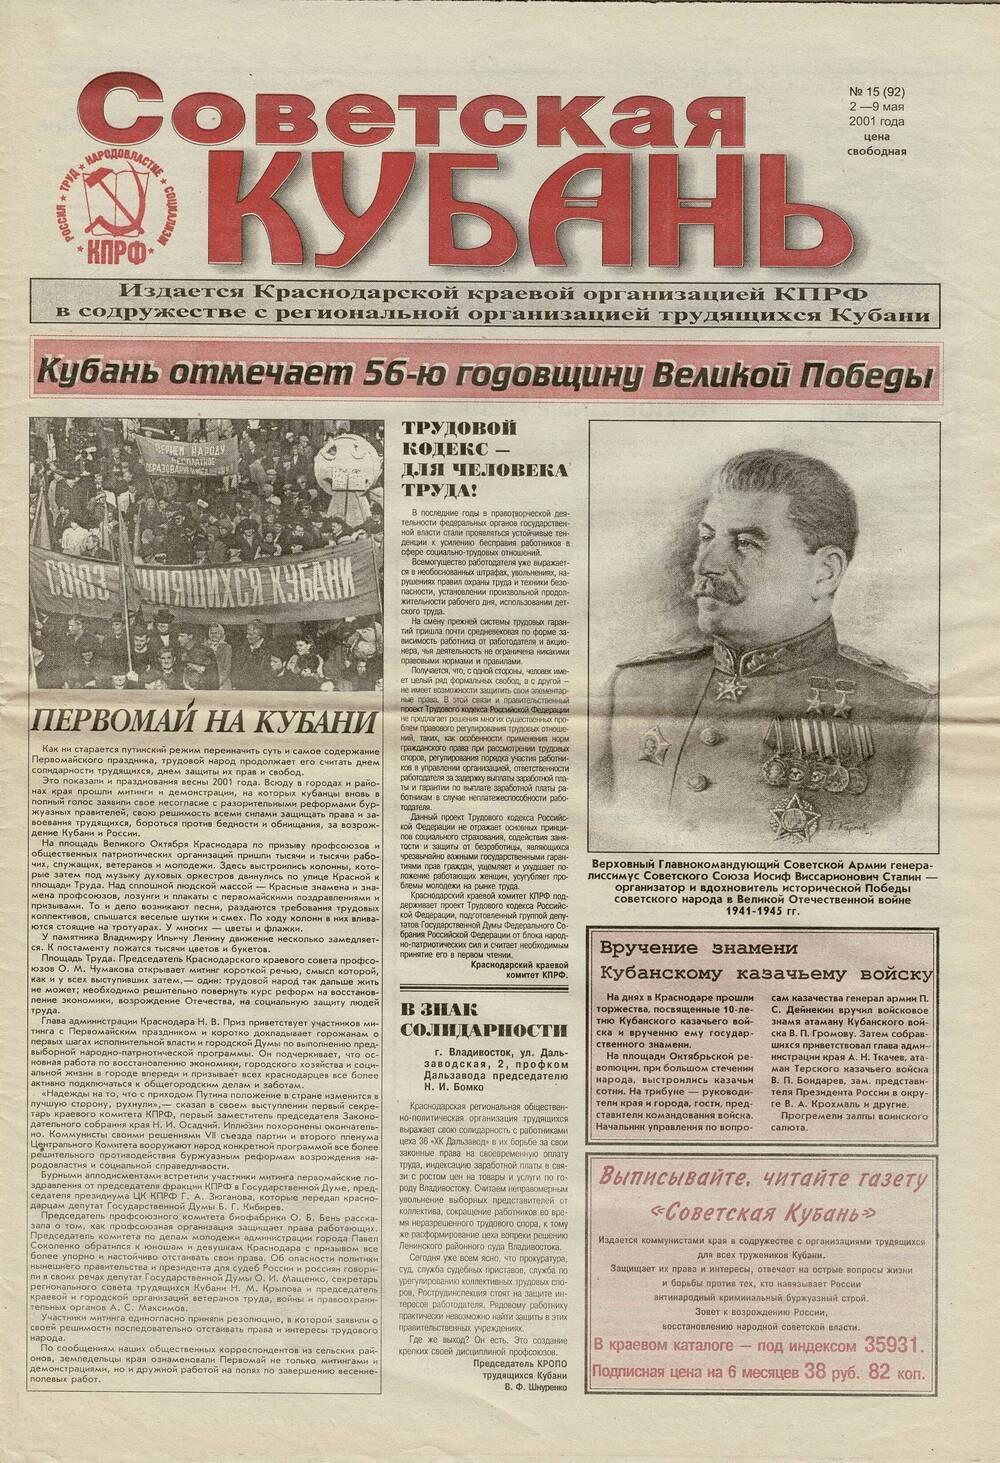 Газета «Советская Кубань» №15 от 29 мая 2001 года. Со снимком ансамбля «Гармония» Староминского отдела культуры.